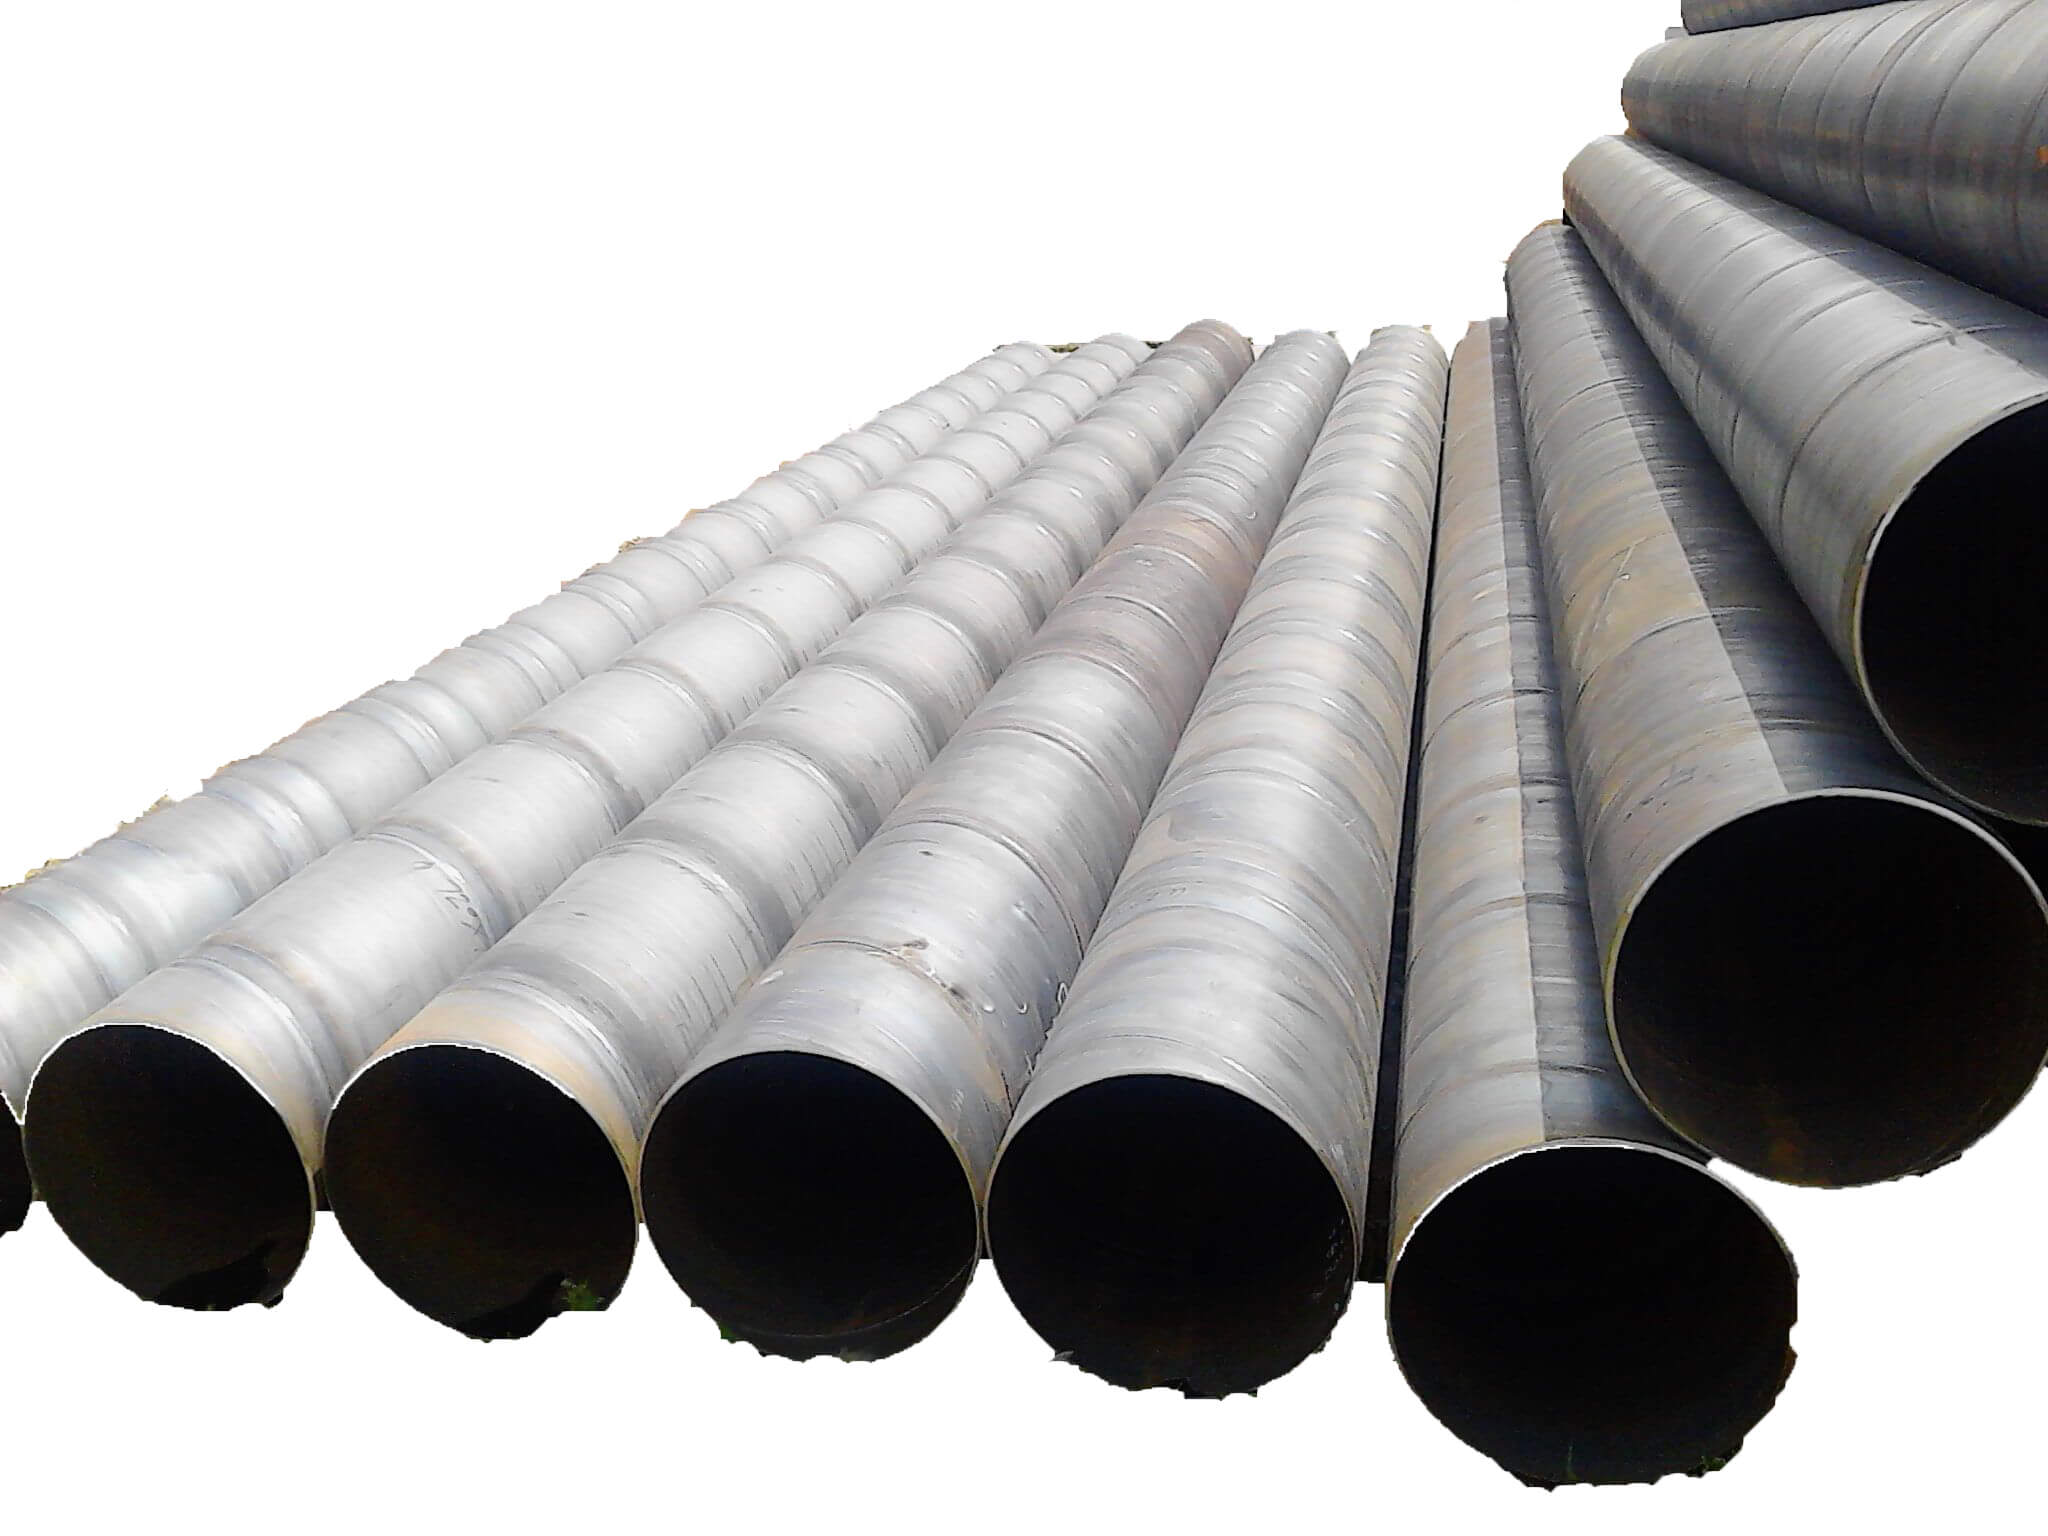 La fábrica vende tubos de acero sin costura ASTM y tubos de acero recubiertos de plástico.